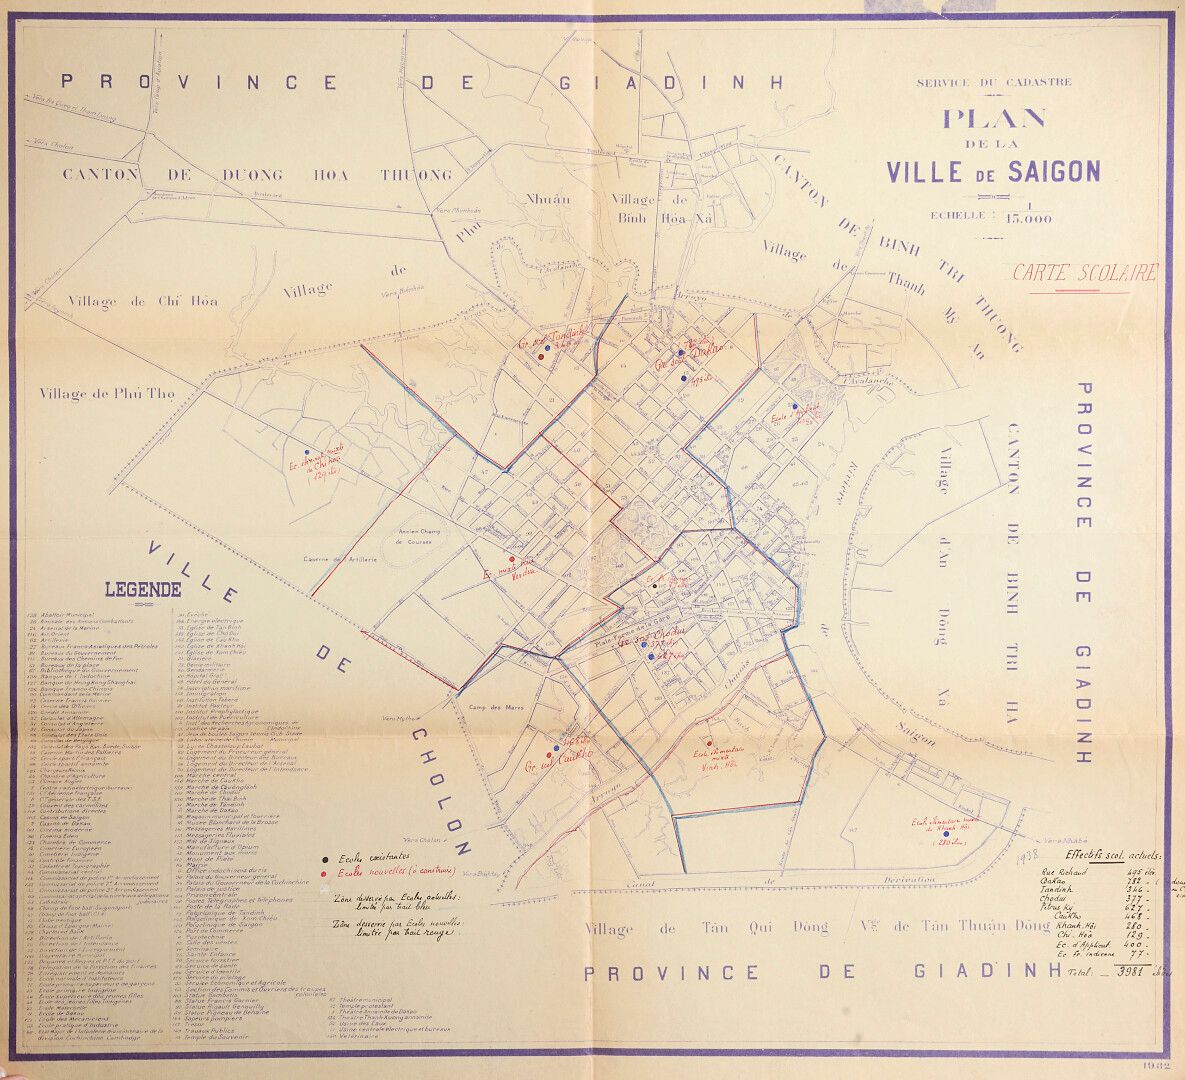 Null 1932. Vom Katasteramt veröffentlichte Pläne der Stadt Saigon.

- Karte der &hellip;